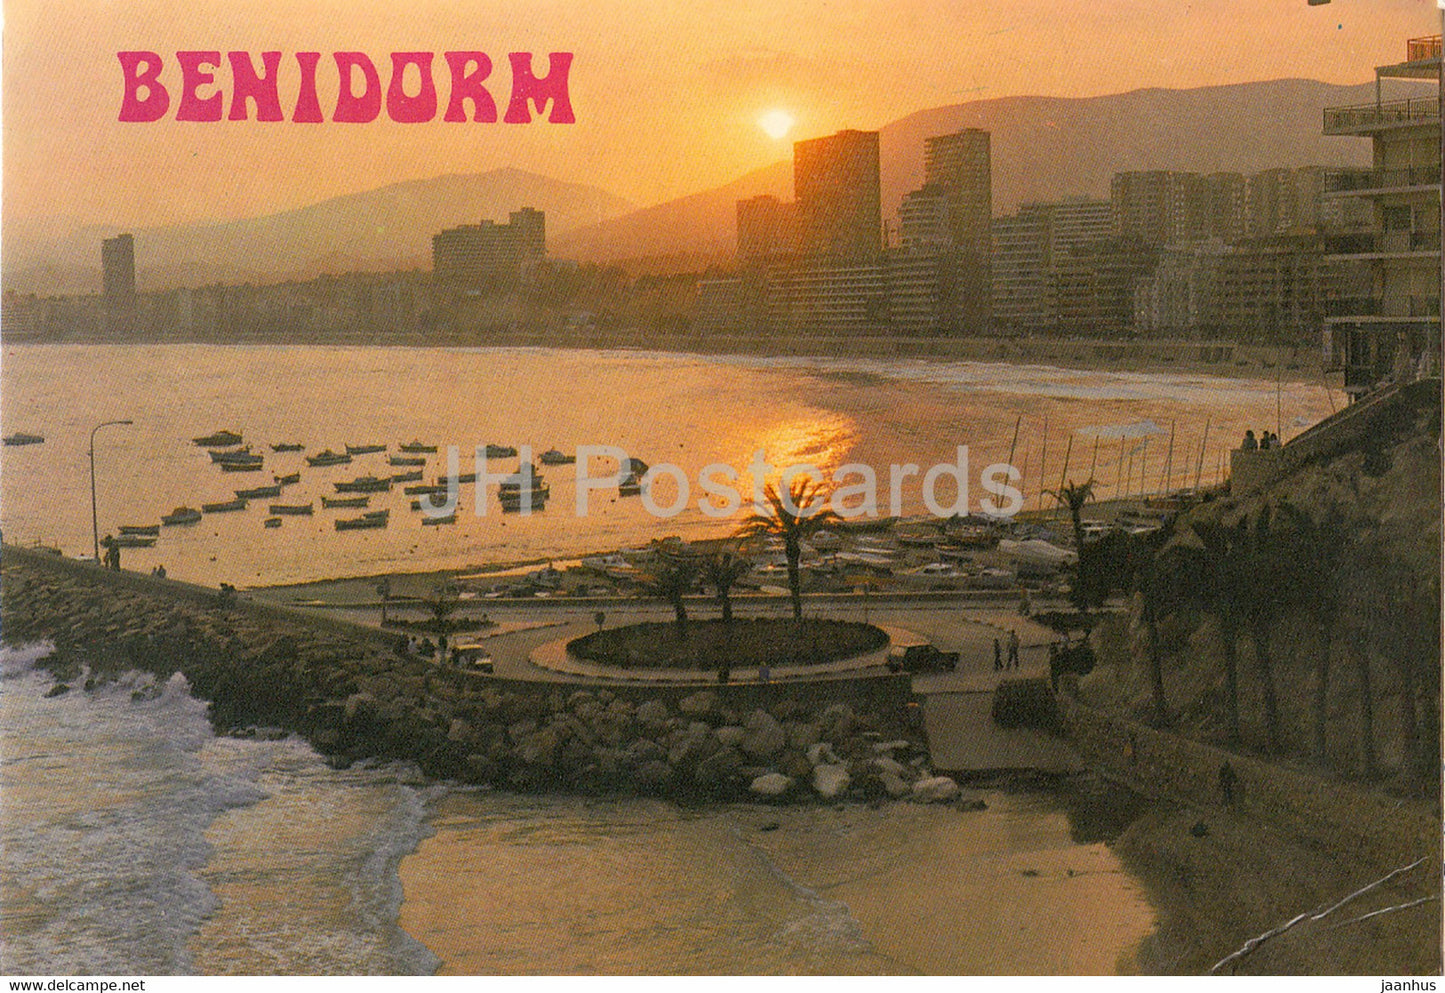 Benidorm - Atardecer en el Puerto - 89 - 1985 - Spain - used - JH Postcards